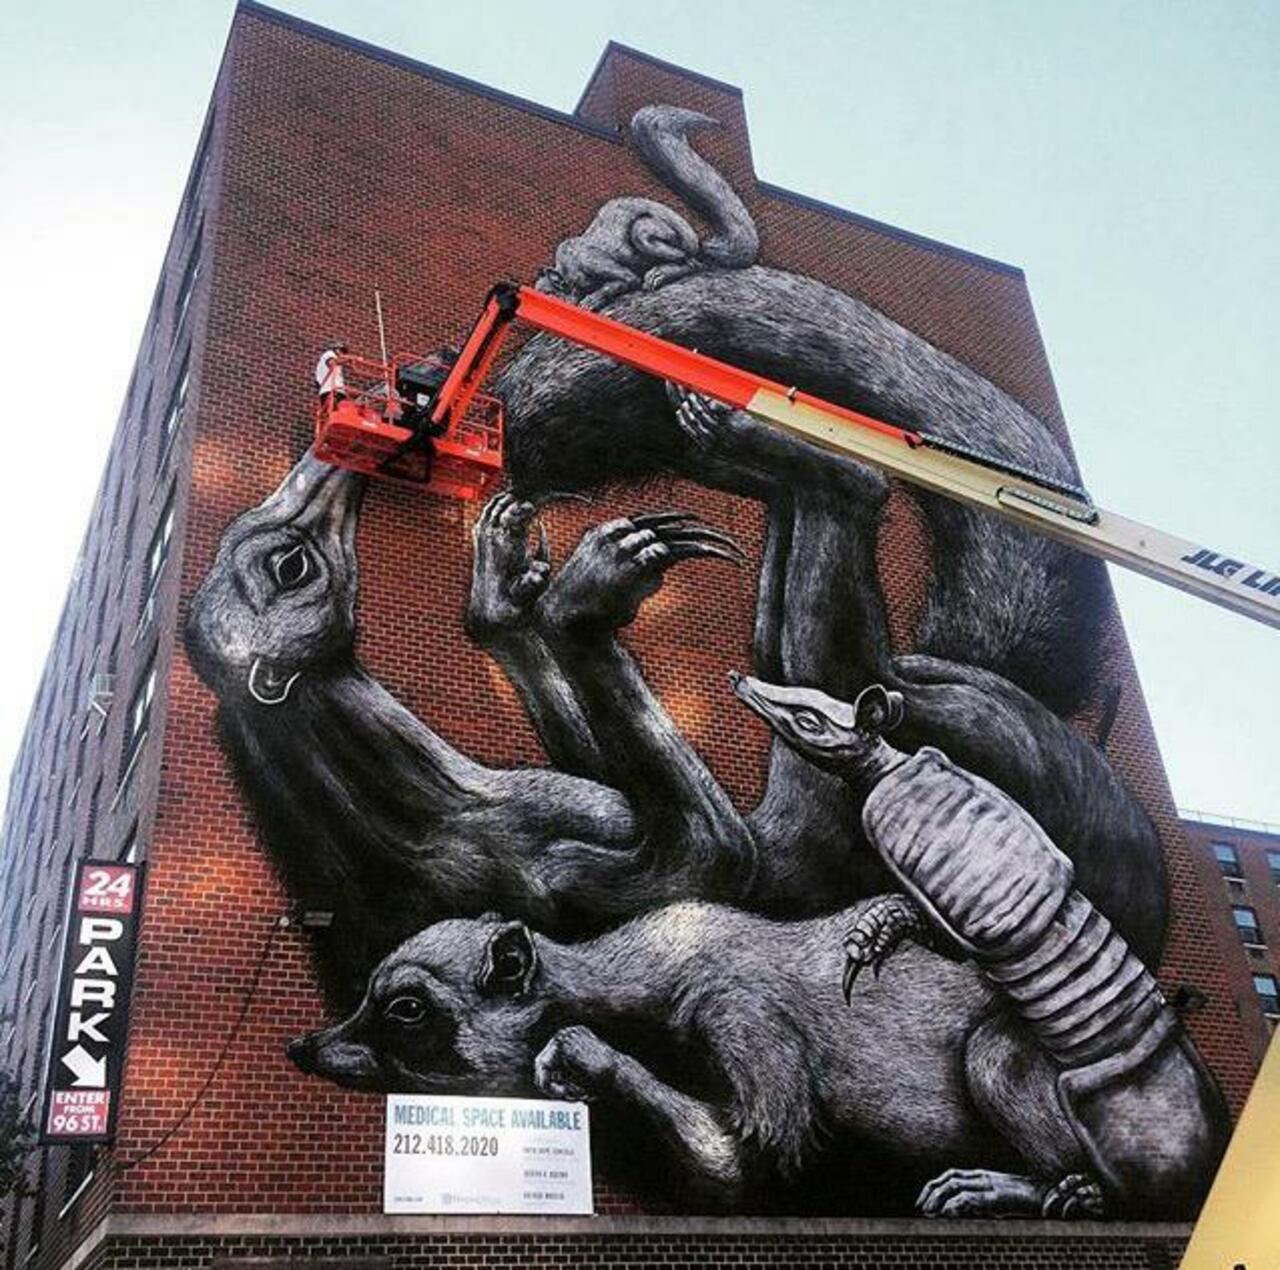 Street Art in progress by ROA in NYC

#art #graffiti #mural #streetart http://t.co/Yzj8LRwezg